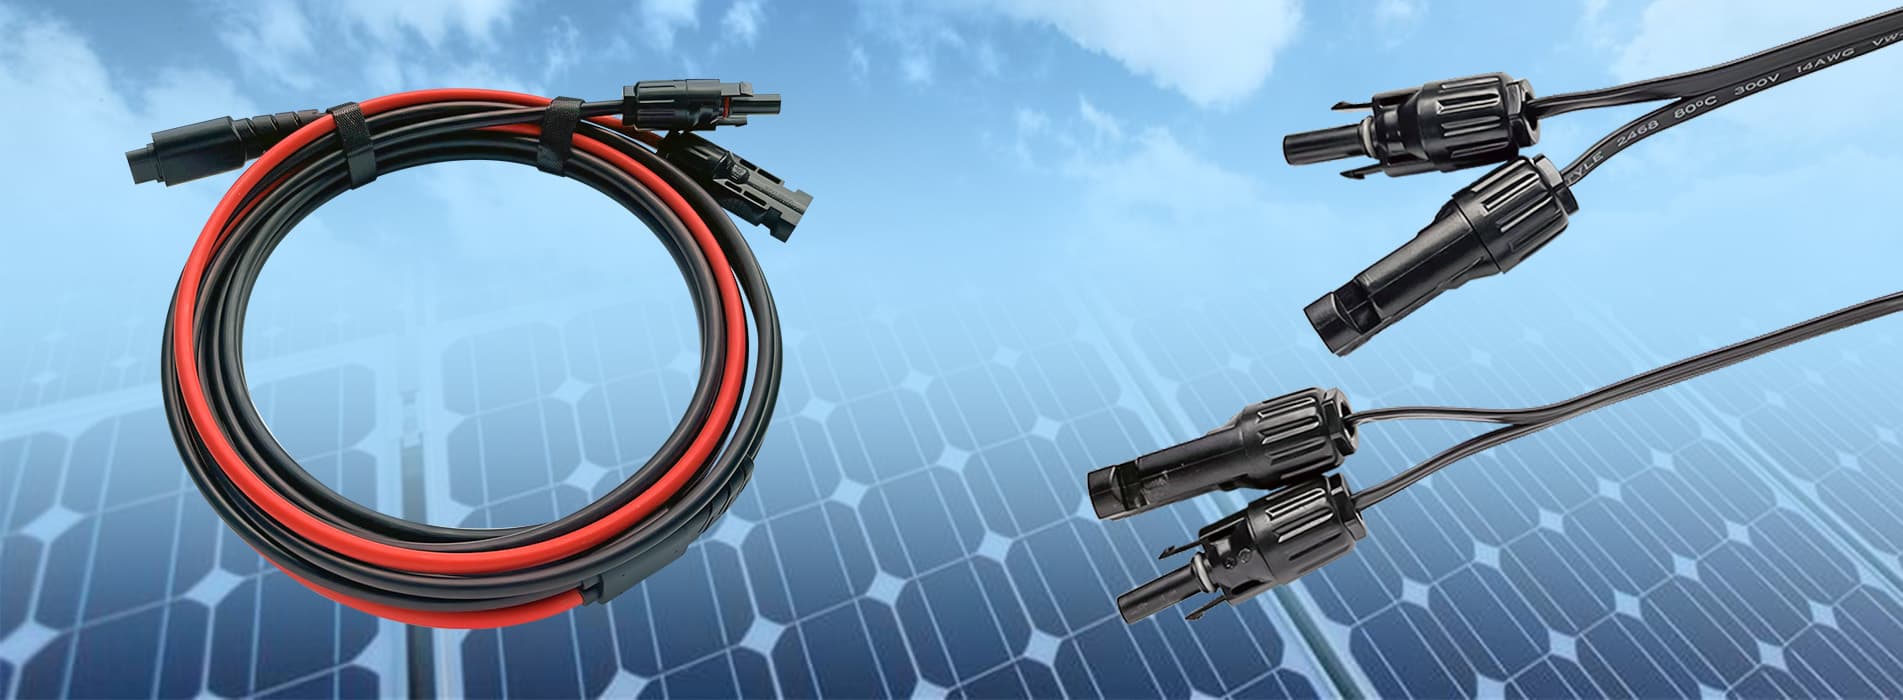 Anschlüsse und Kabel für Solarmodule